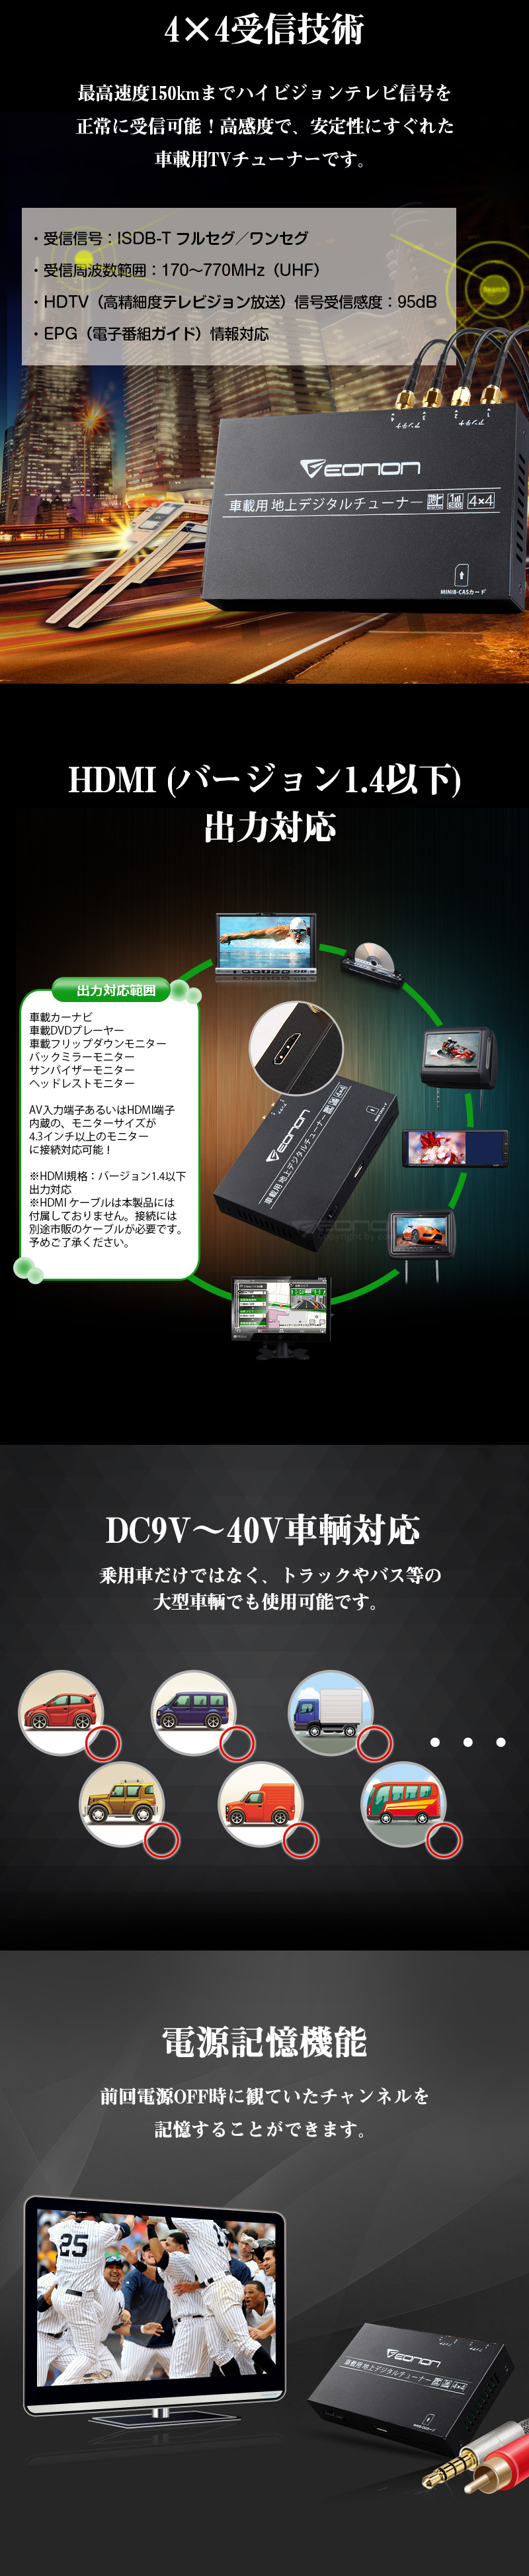 フルセグチューナー搭載 カーオーディオ DVDプレイヤー 2DIN (D2121JI)